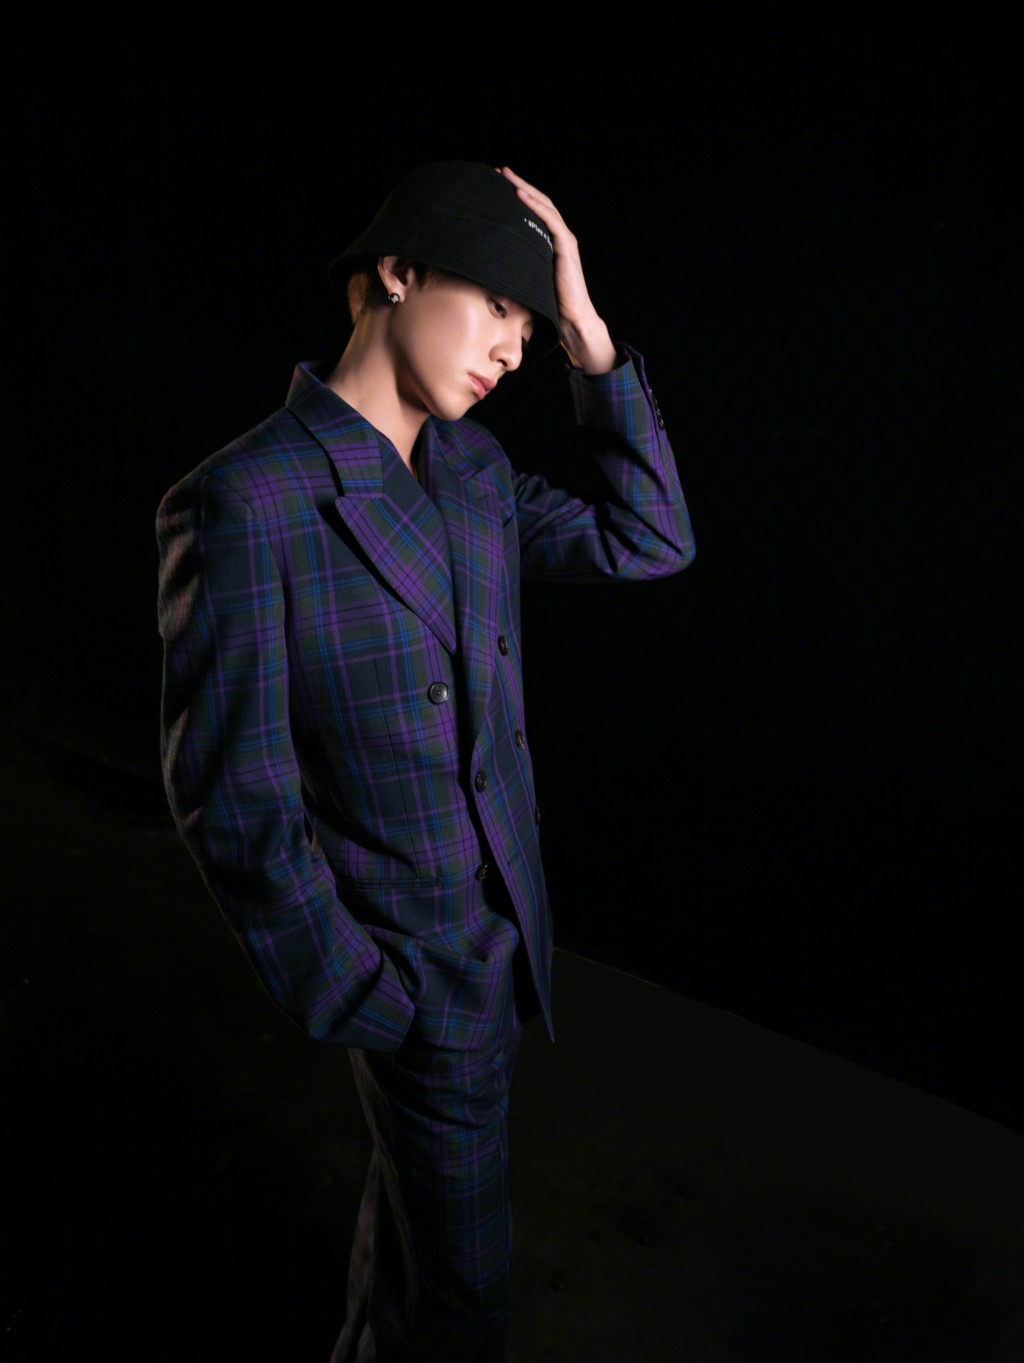 王鹤棣紫色格纹套装潇洒有型光影写真